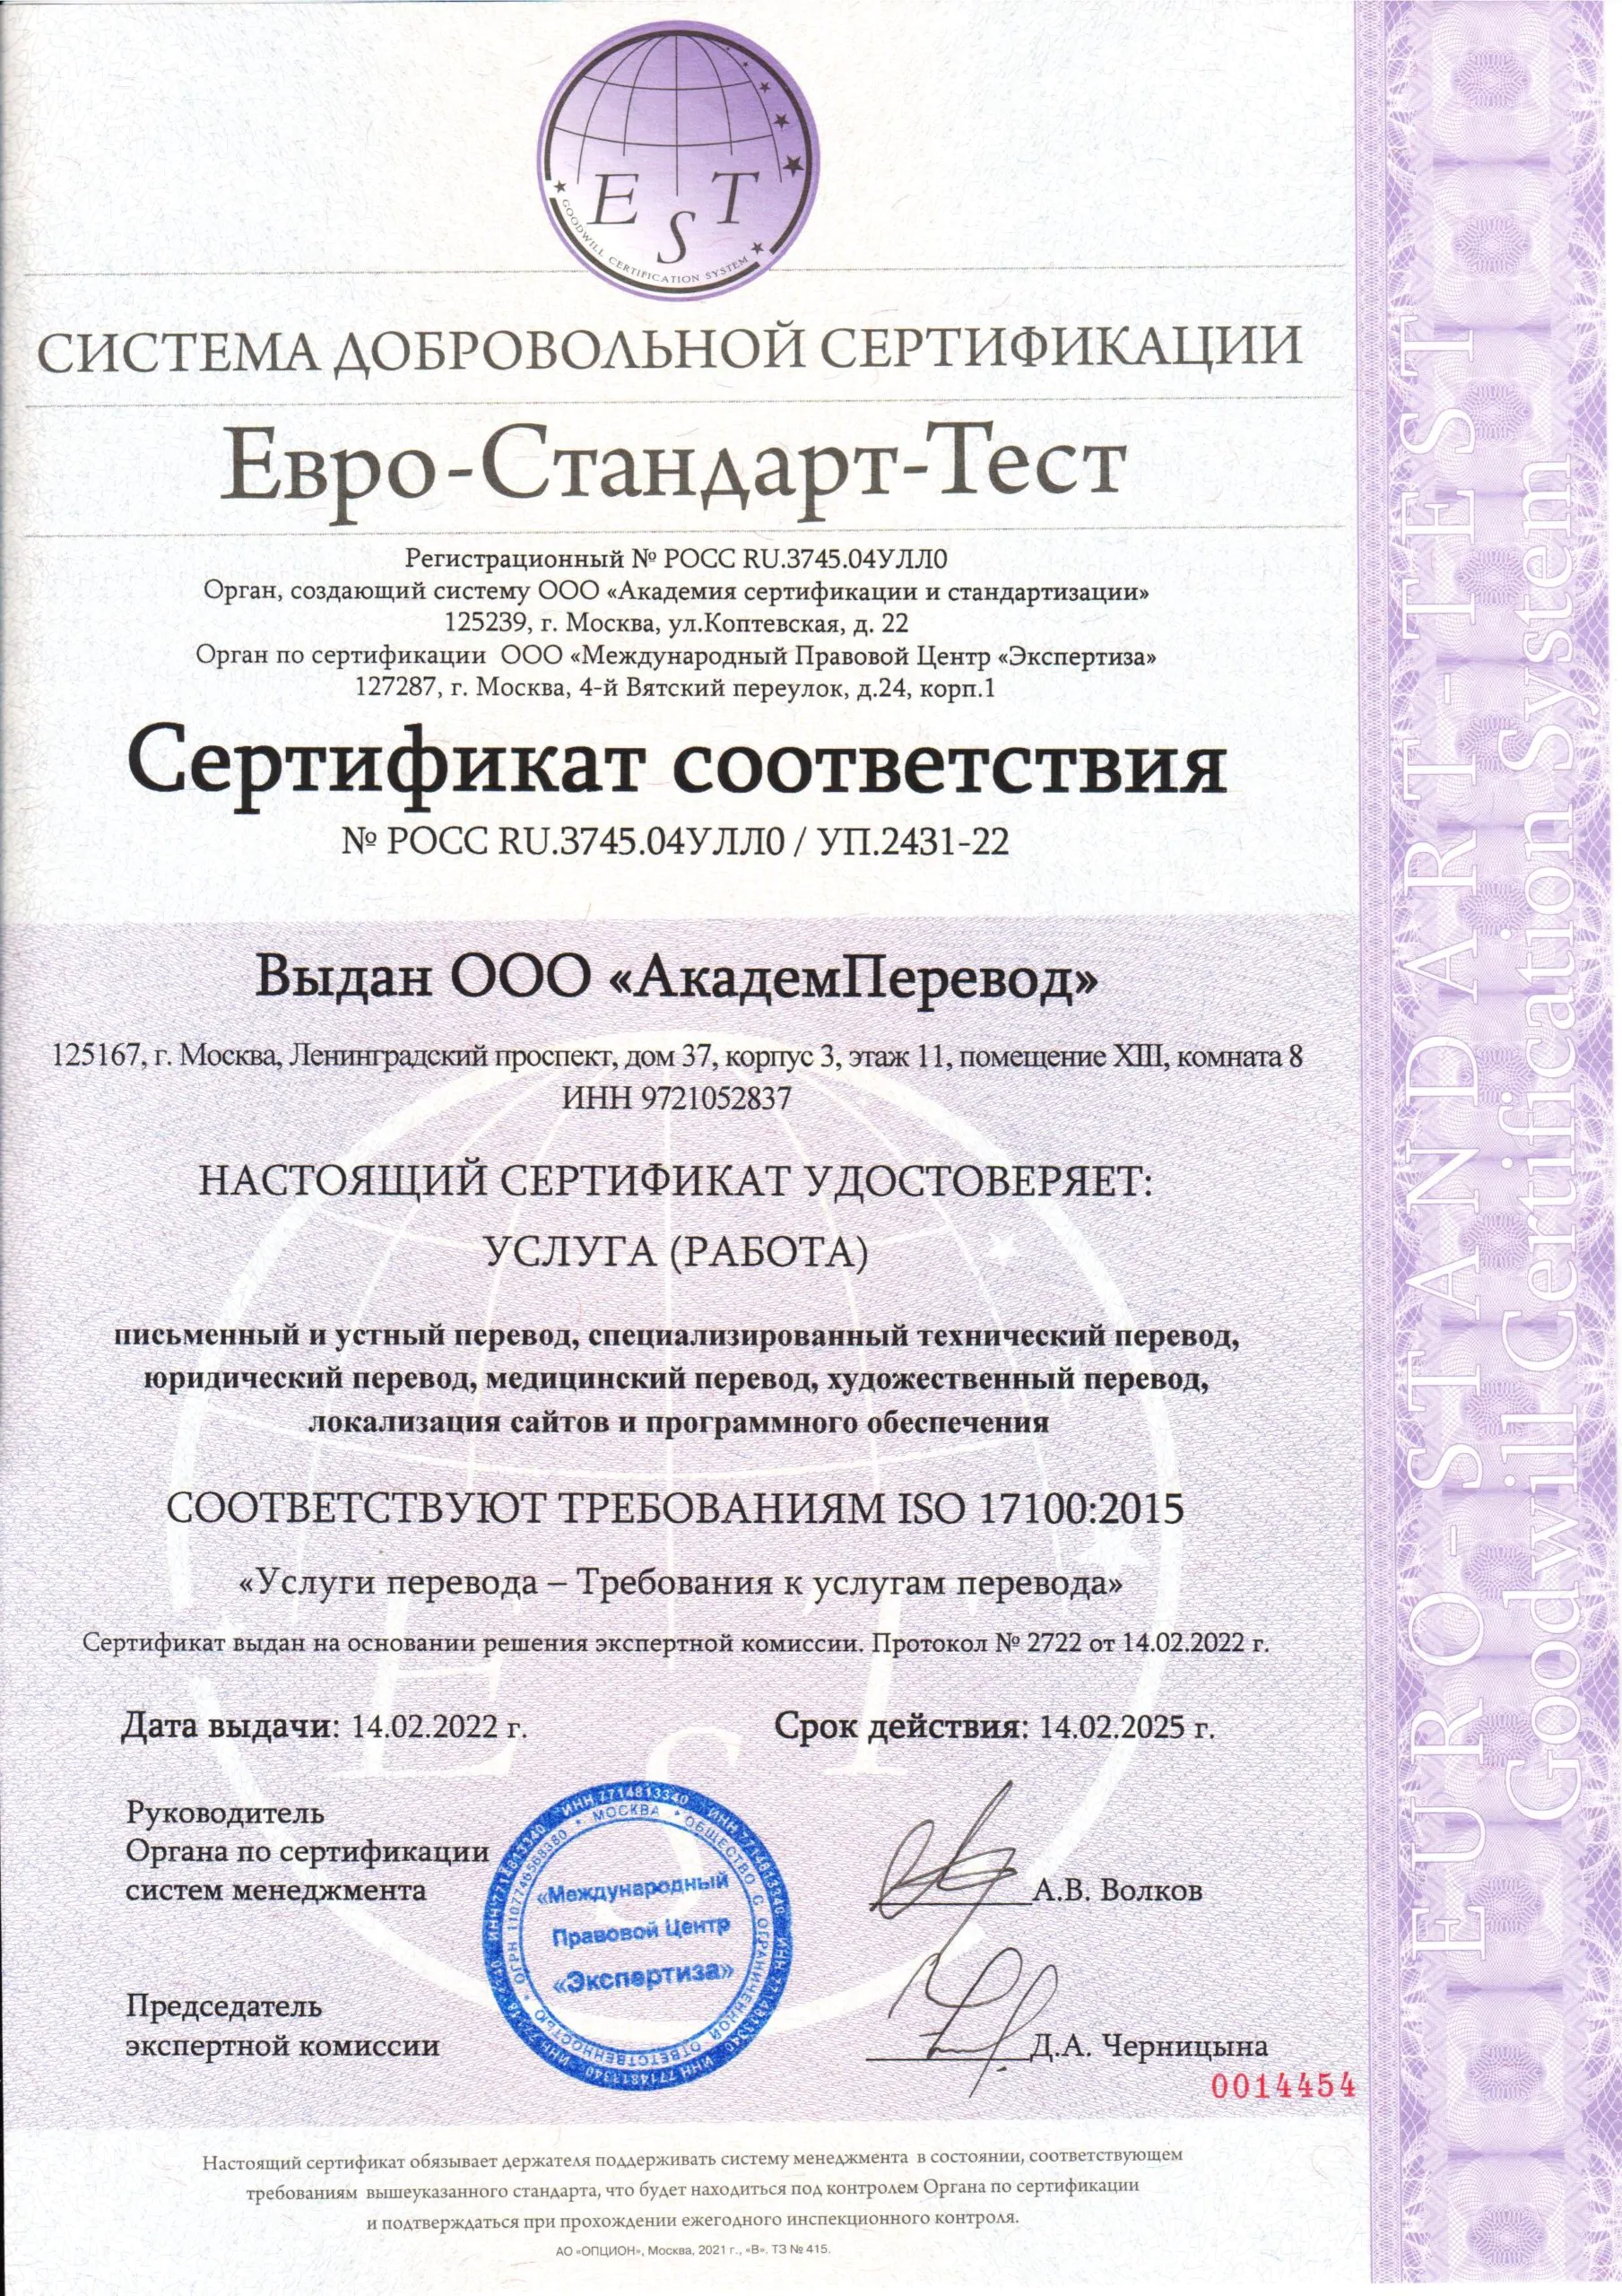 Сертификат ISO 17100:2015 «Услуги перевода – Требования к услугам перевода»